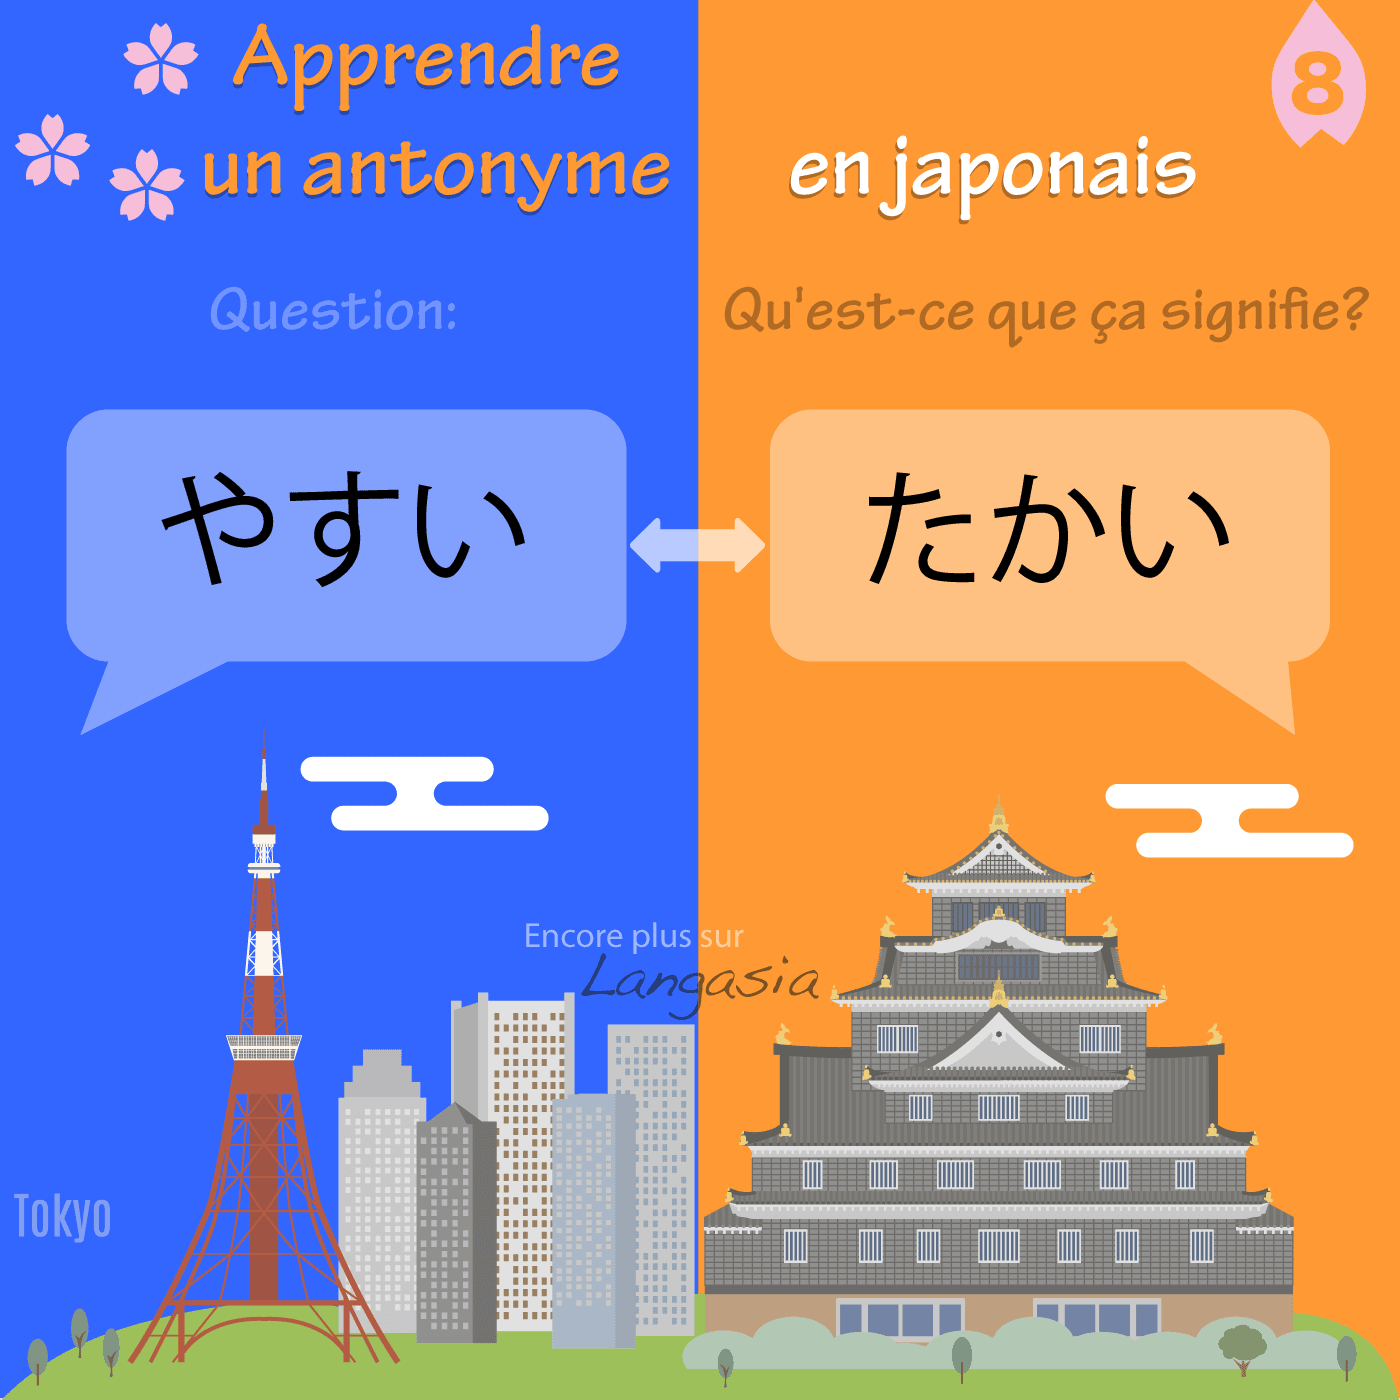 Antonyme en japonais - やすい bon marché VS たかい cher